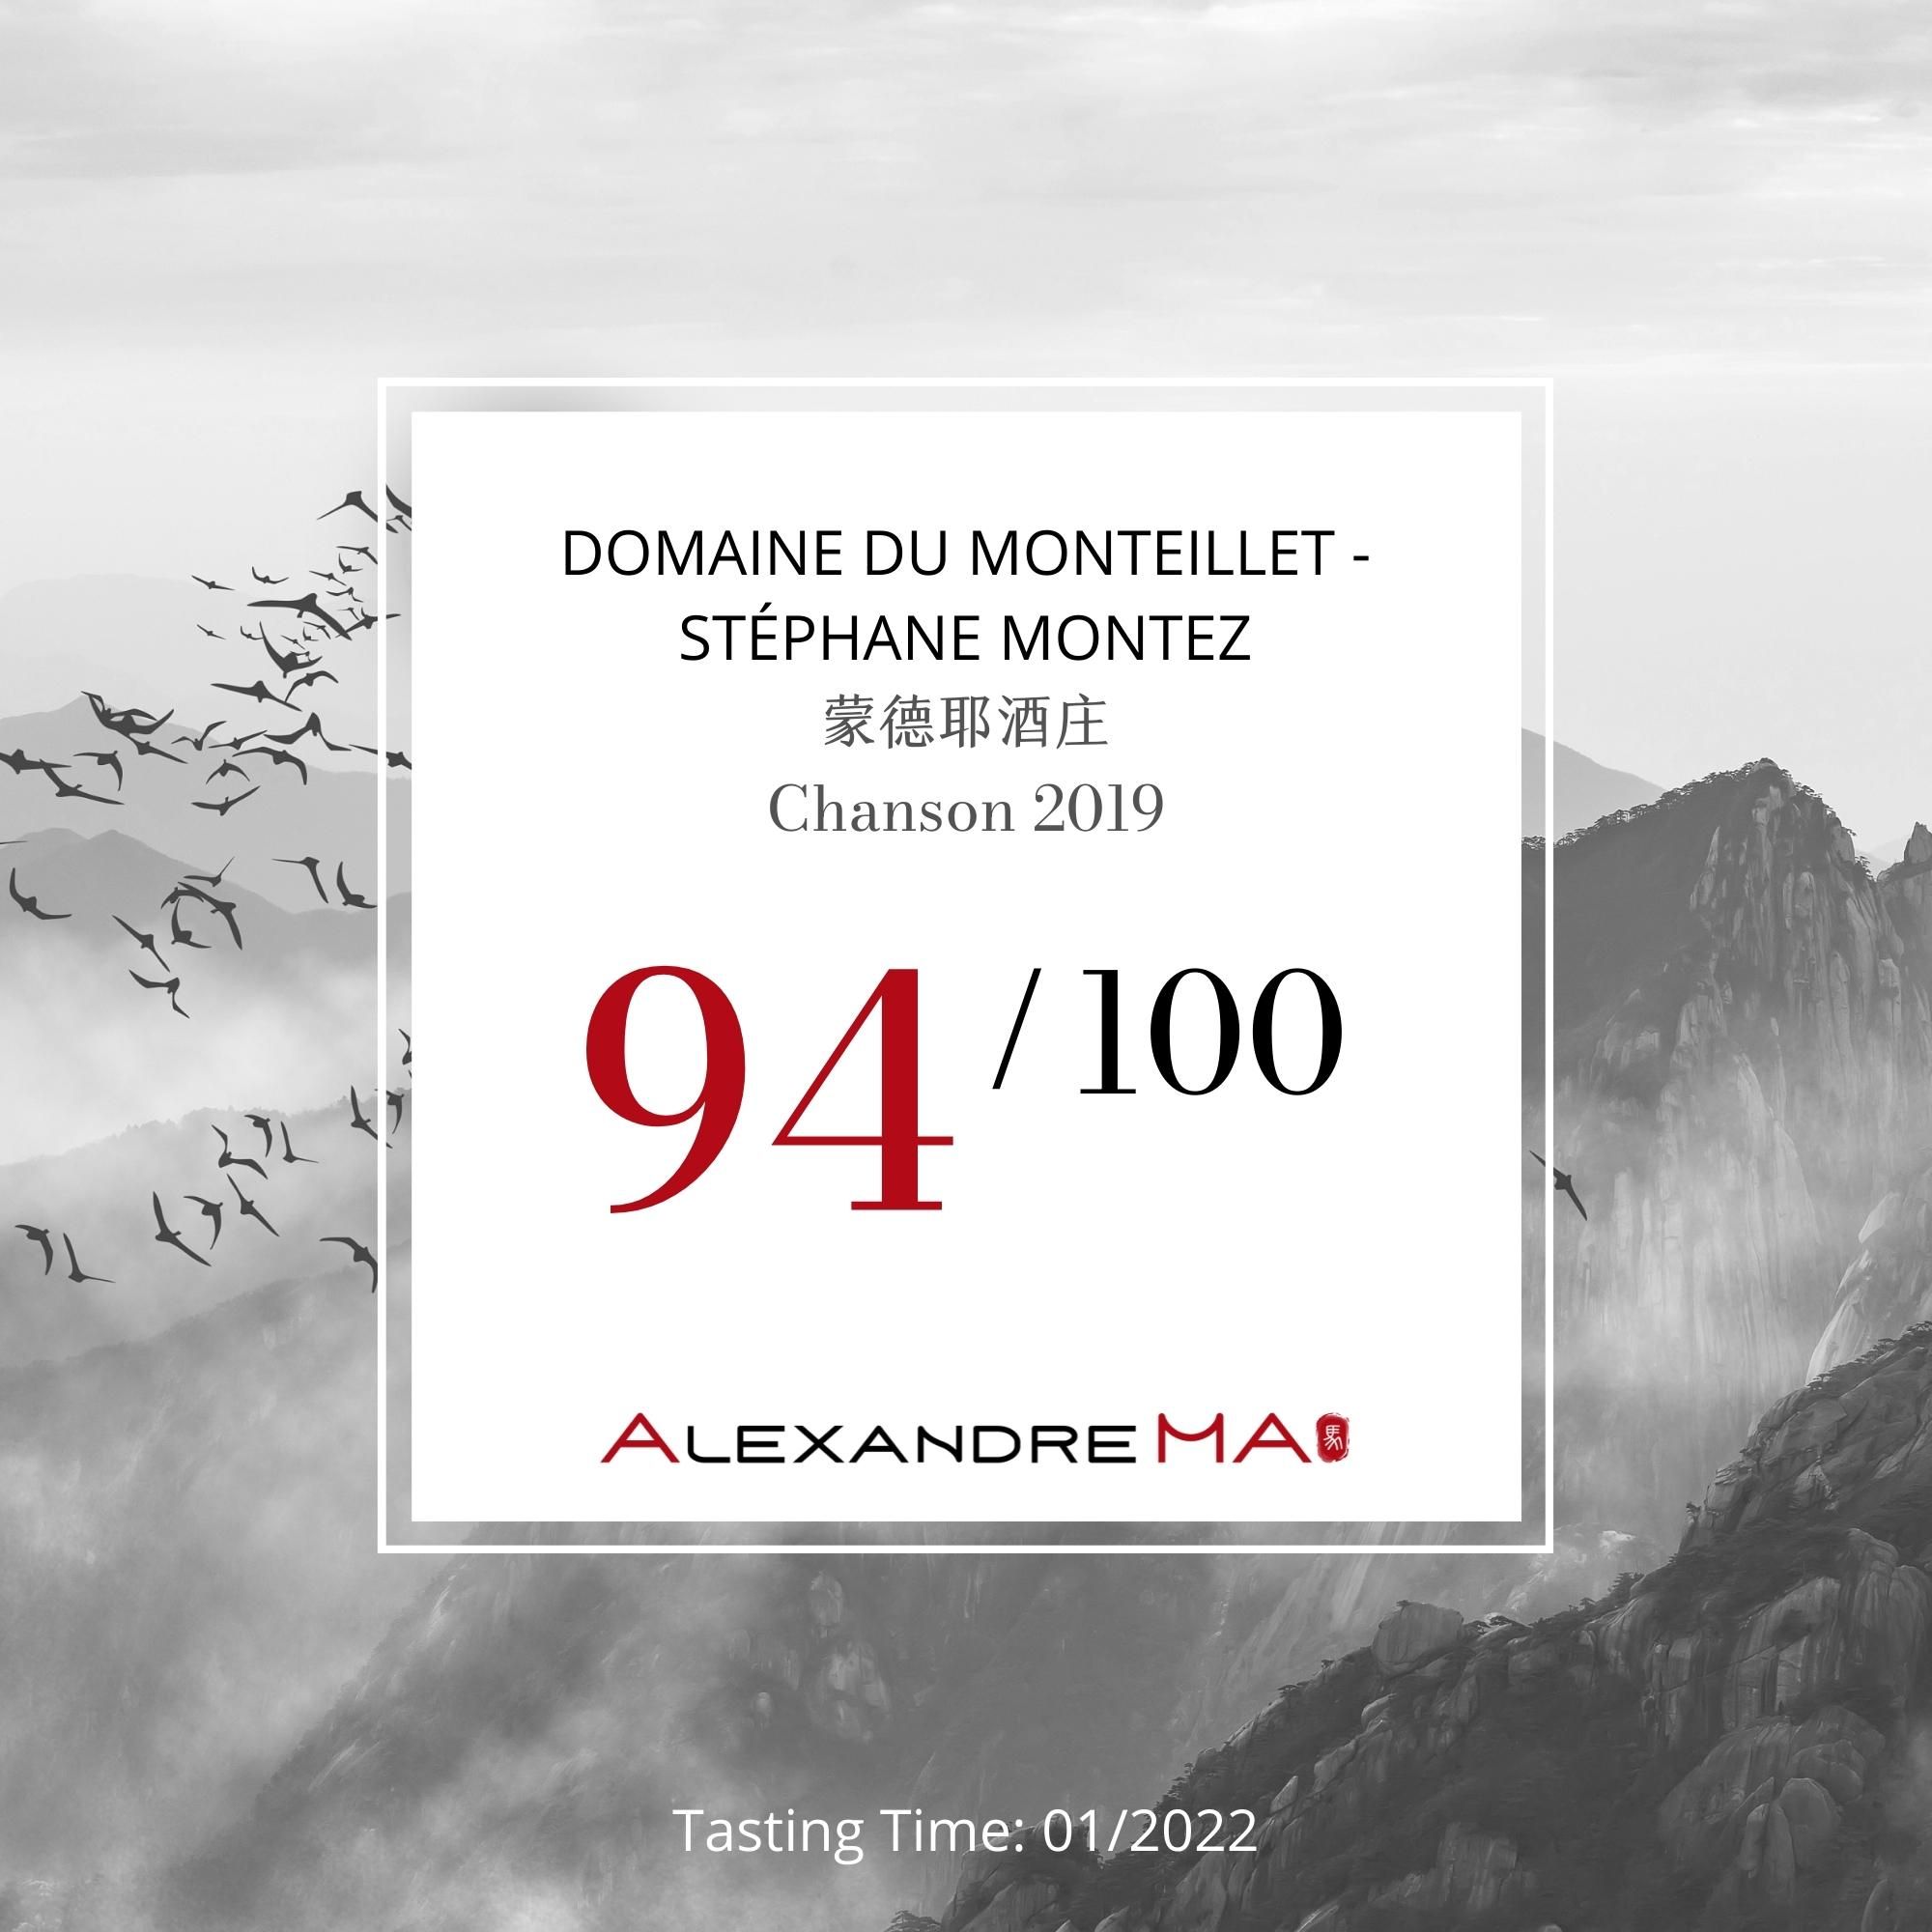 Domaine du Monteillet-Stéphane Montez 蒙德耶酒庄-Chanson 2019 - Alexandre Ma